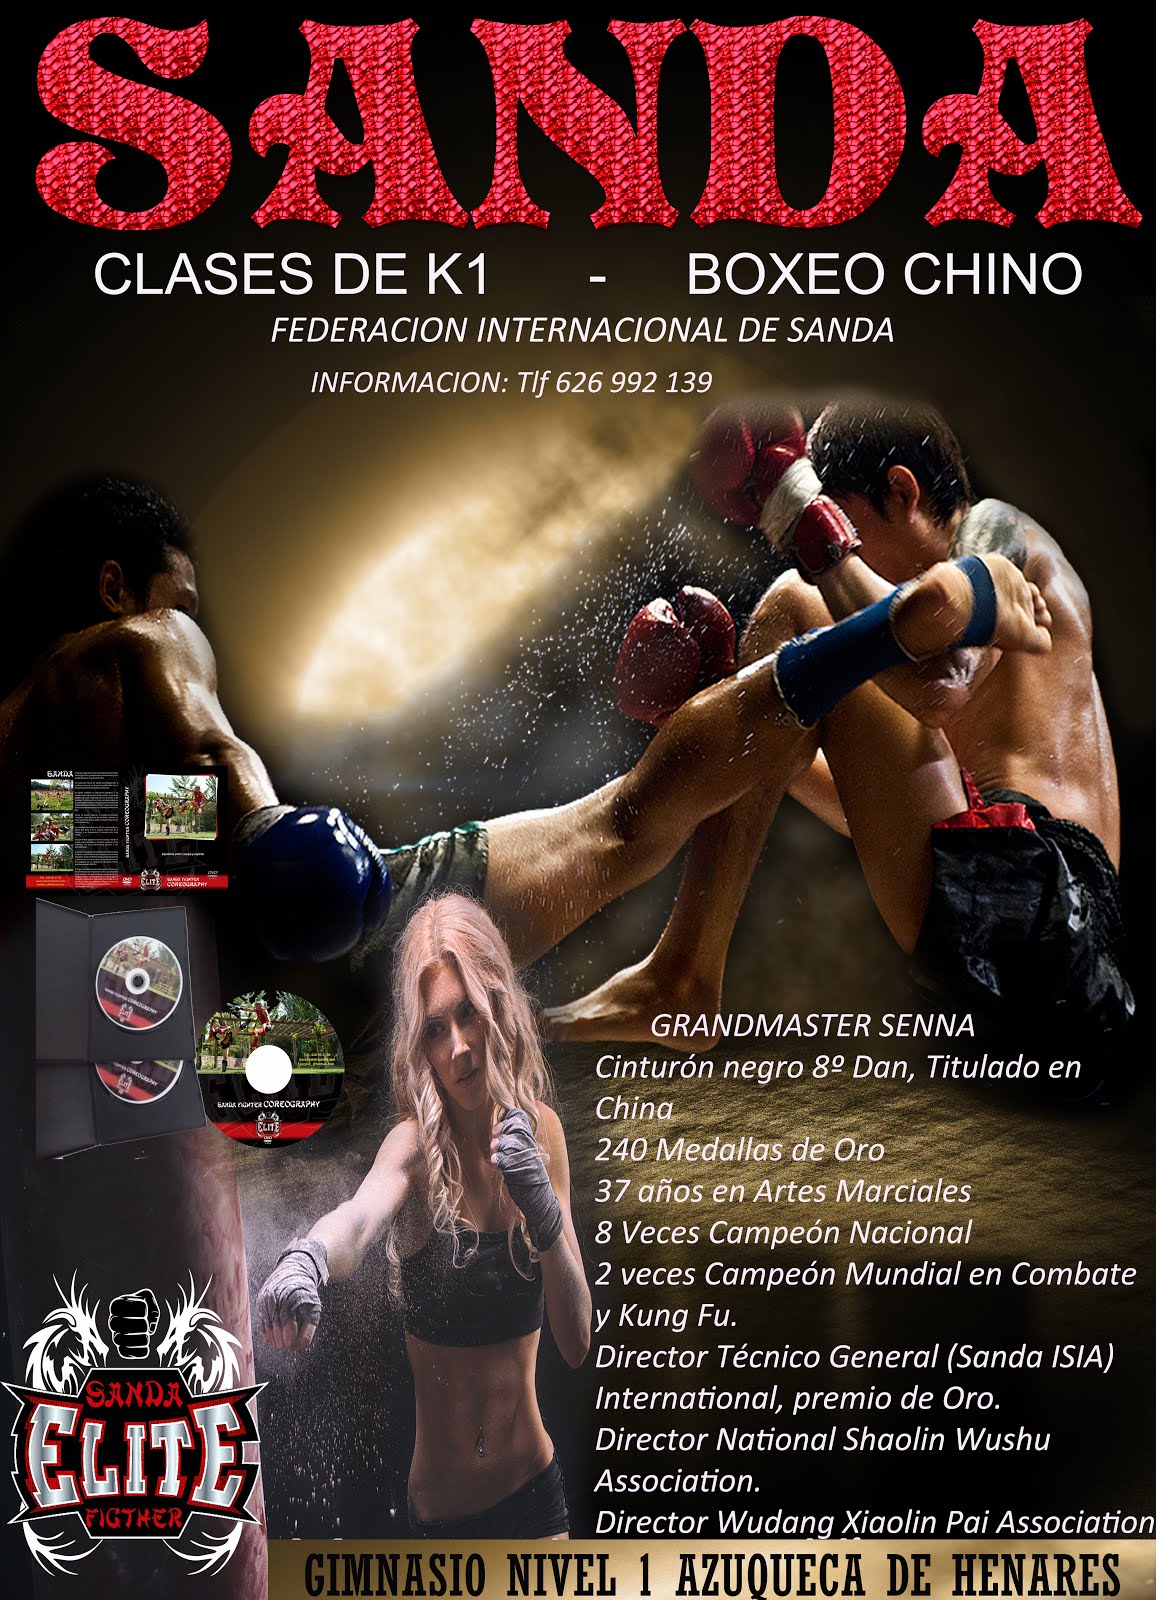 Sanda Boxeo Chino en Azuqueca de Henares ( Gimnasio Nivel Uno)